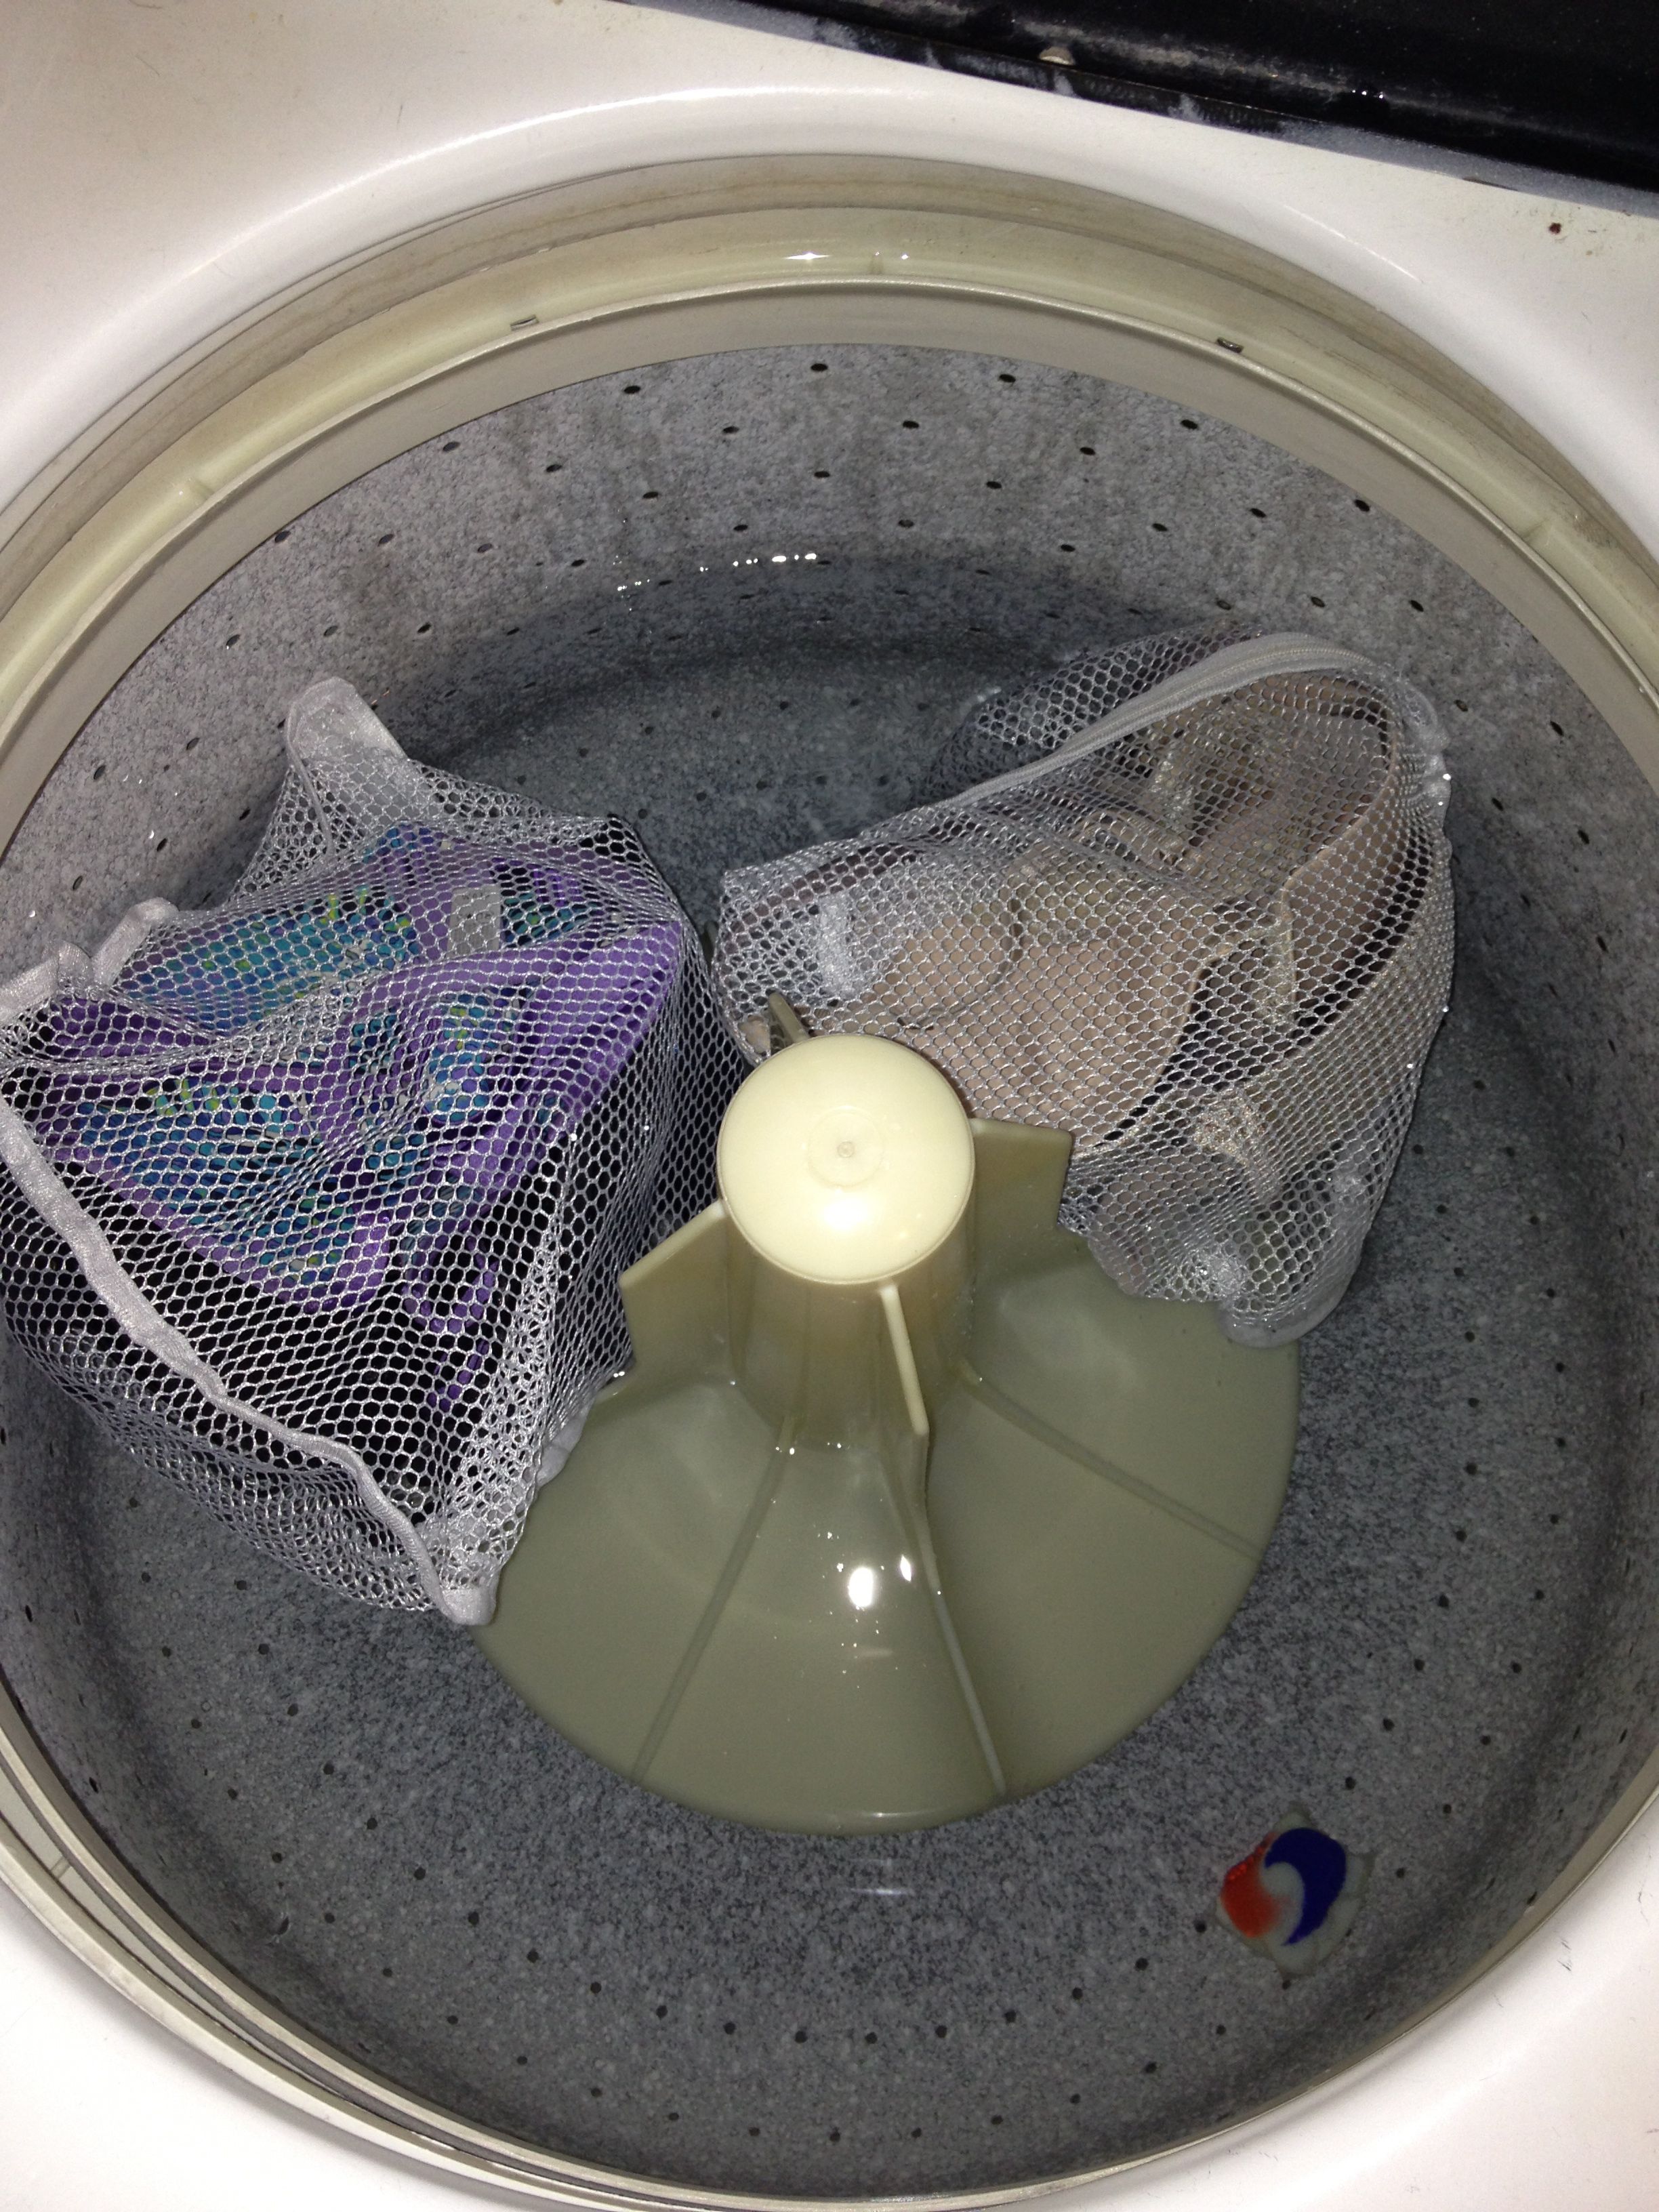 Bra Care & Washing in the Washing Machine – Rachel Bernstein